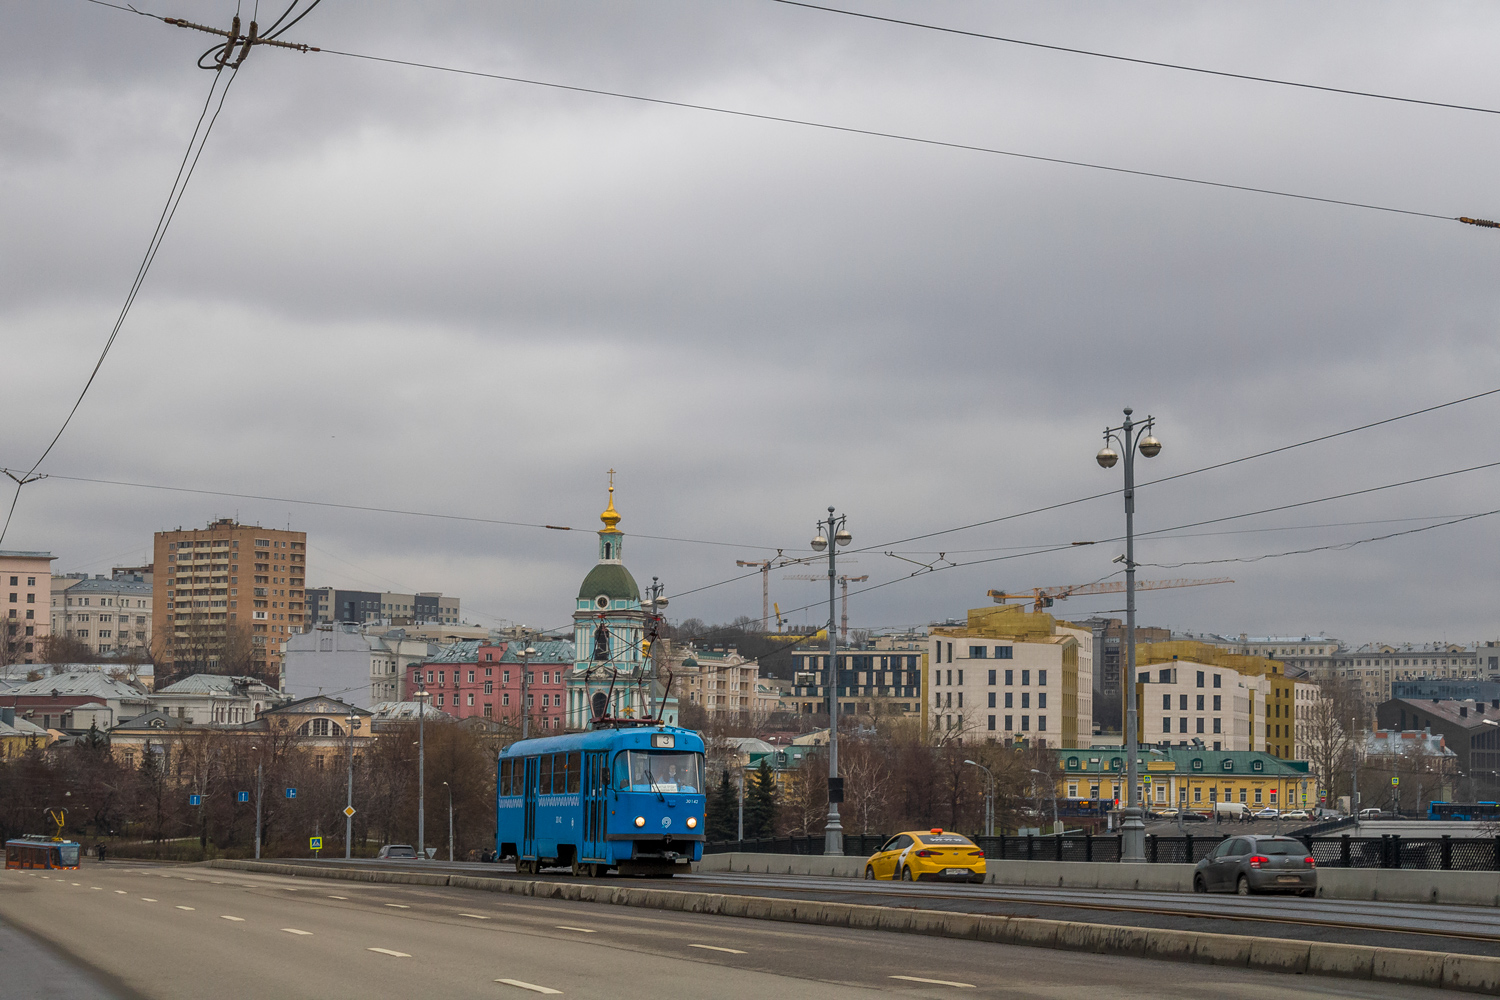 莫斯科 — Trам lines: Central Administrative District